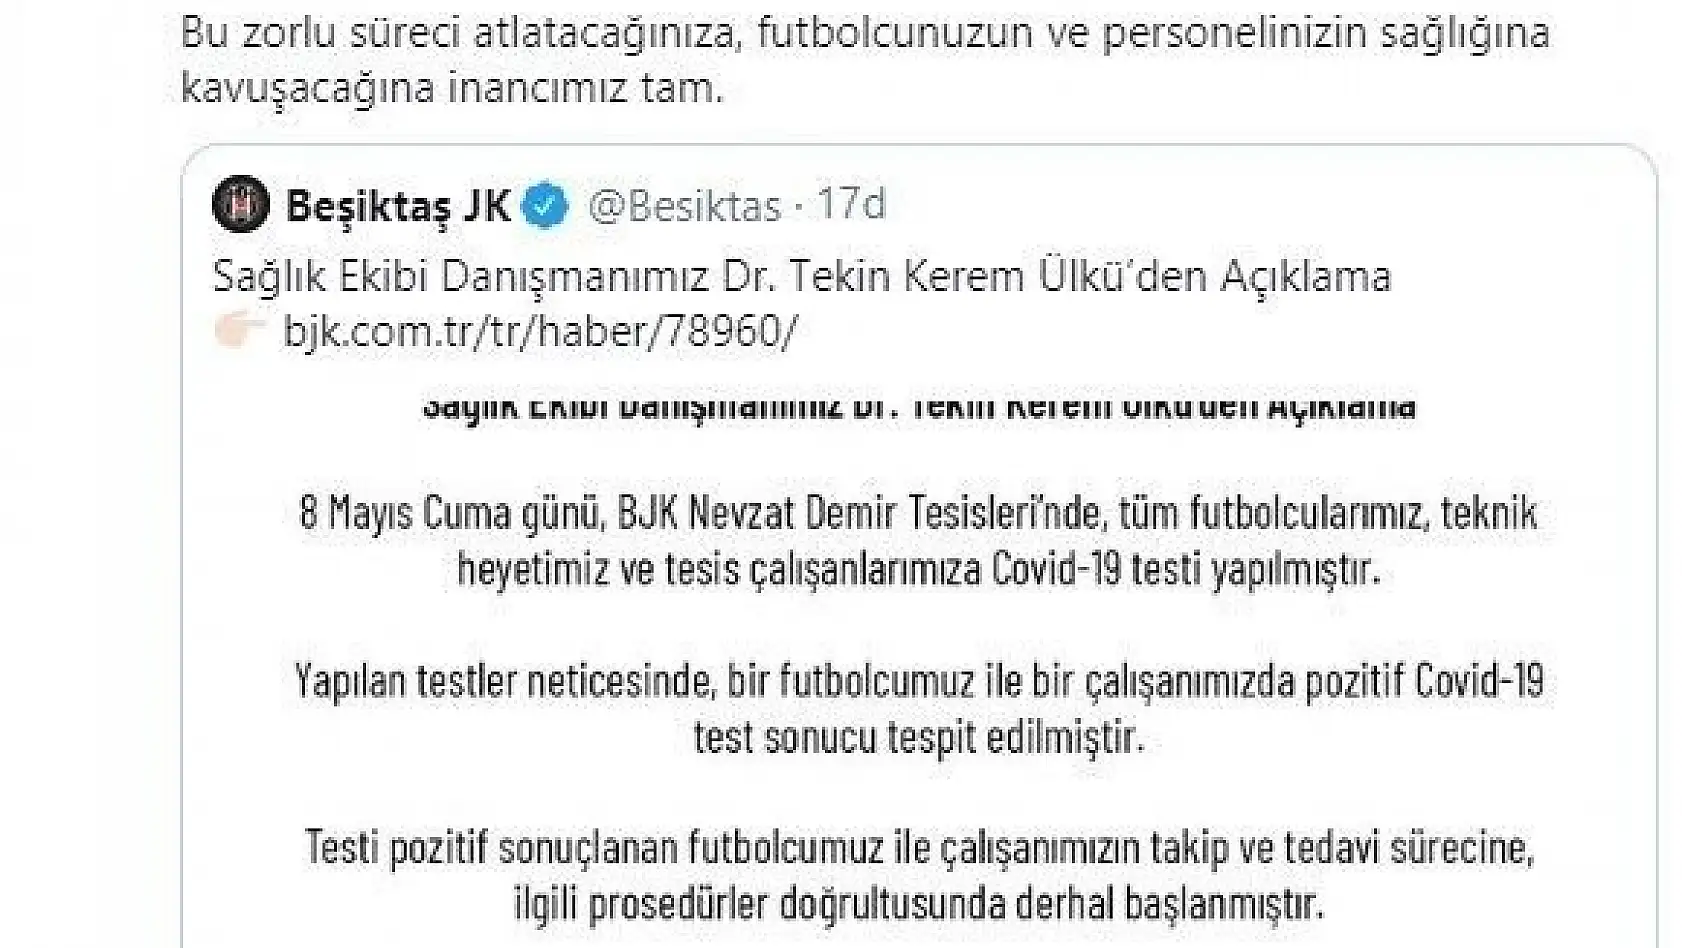 Kayserispor'dan Beşiktaş'a geçmiş olsun mesajı